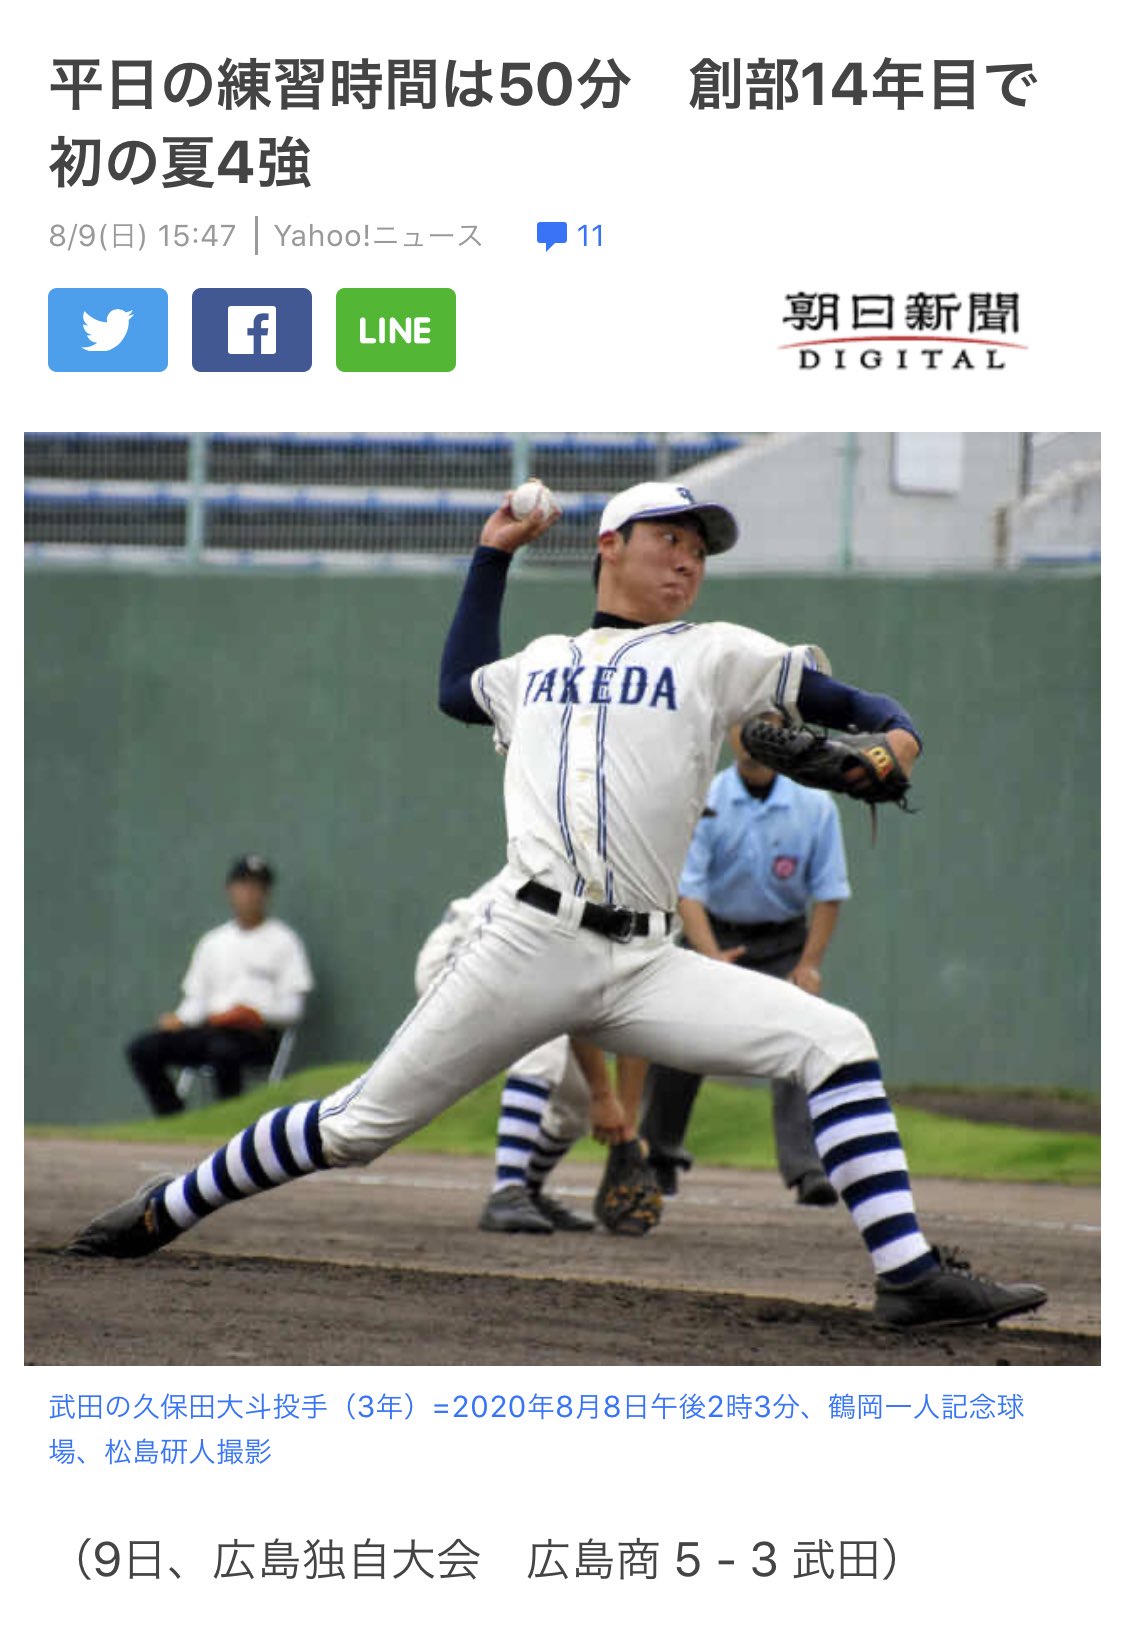 球児園 広島県の武田高校のストッキング個性的で好きです 高校野球のオススメのユニフォームありましたら教えてください 武田高校